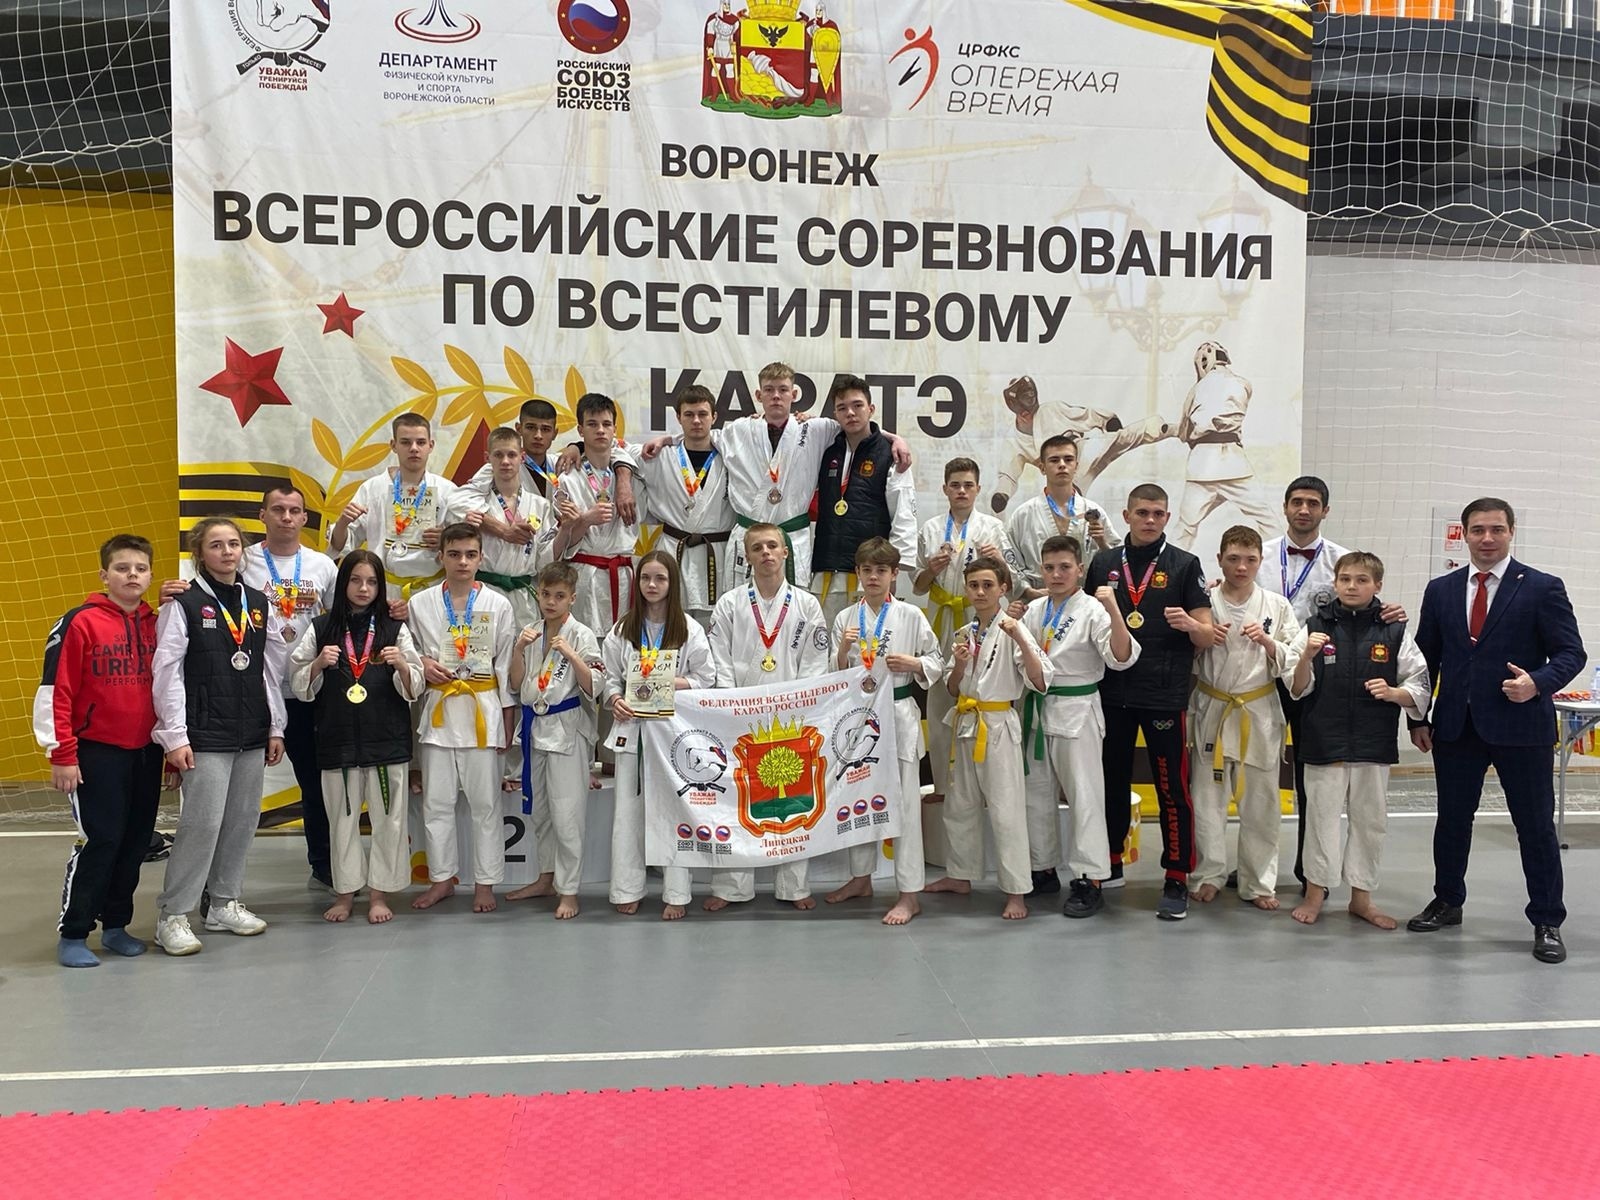 Ещё 3 медали Всероссийских соревнований прибыли в Елец!